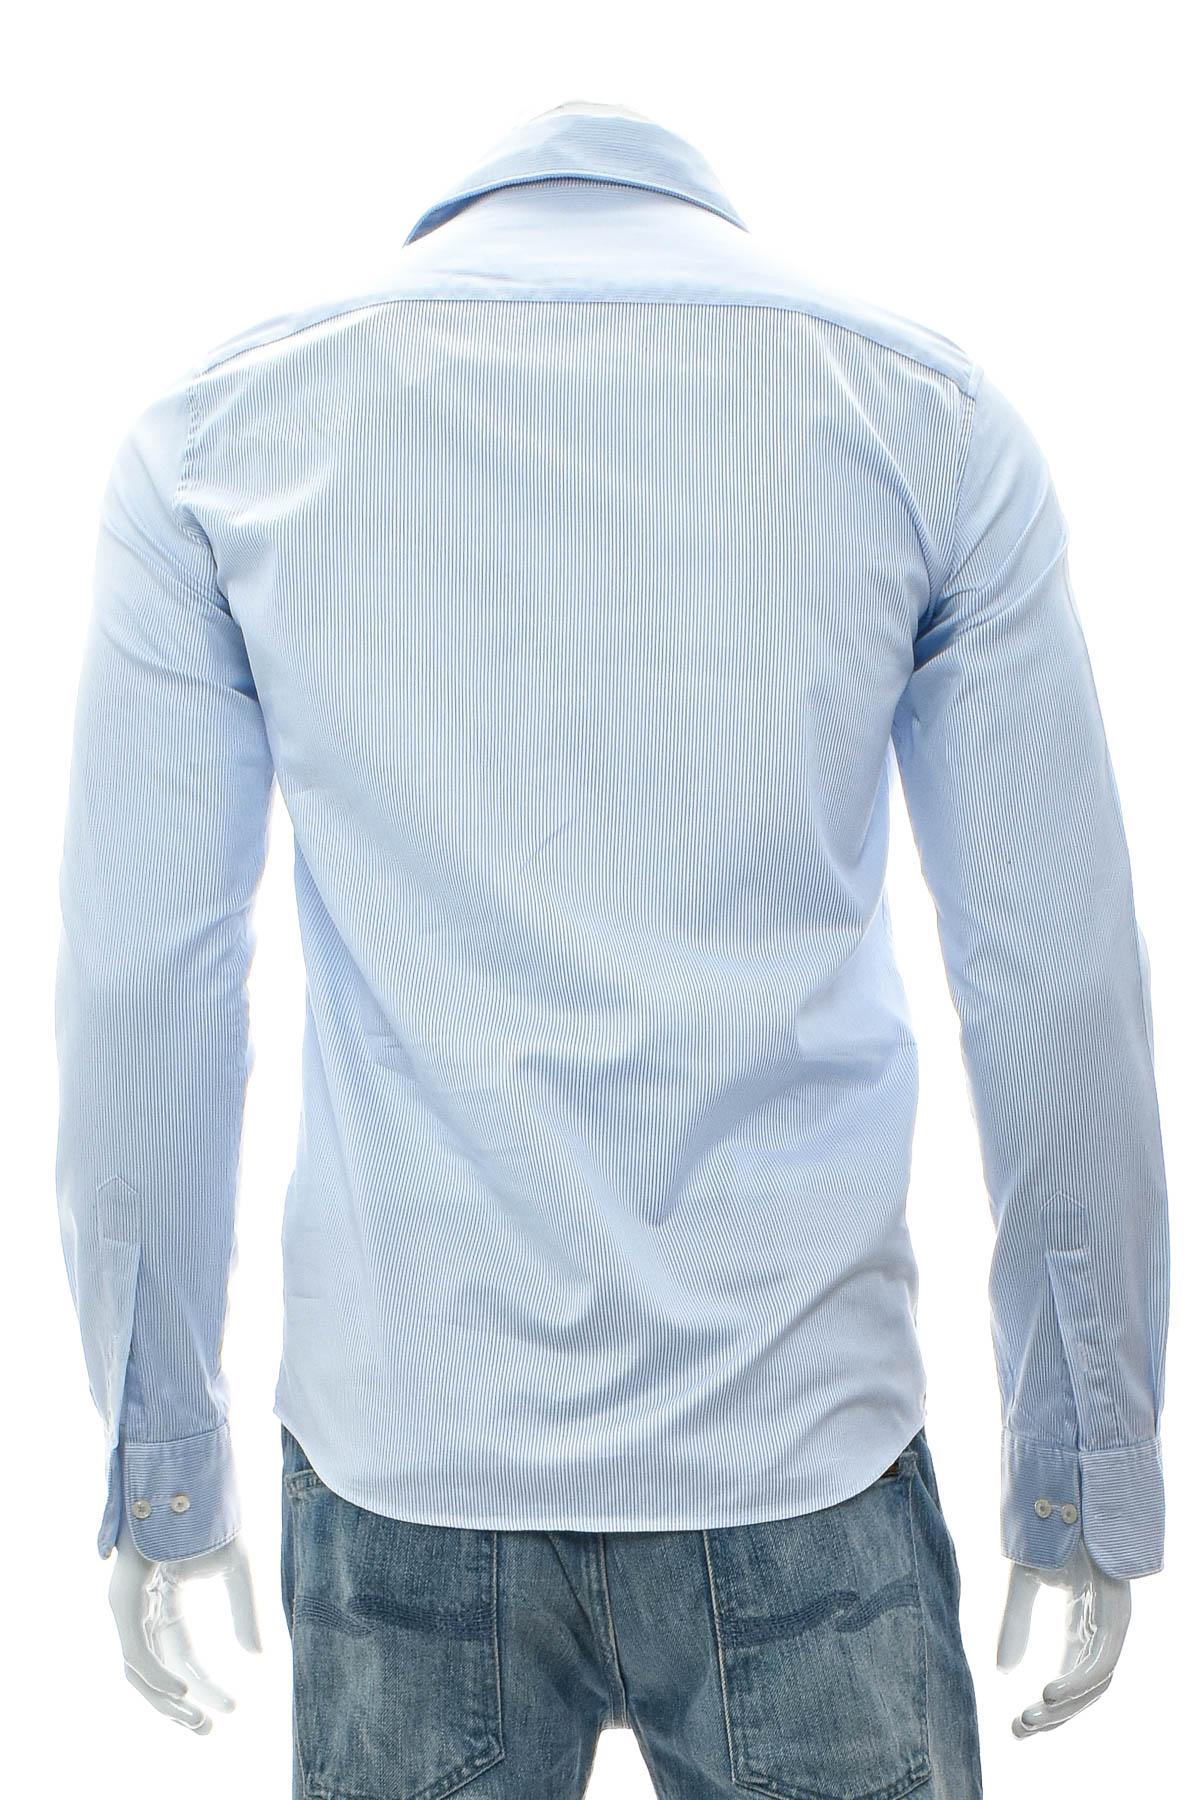 Ανδρικό πουκάμισο - Eterna - 1